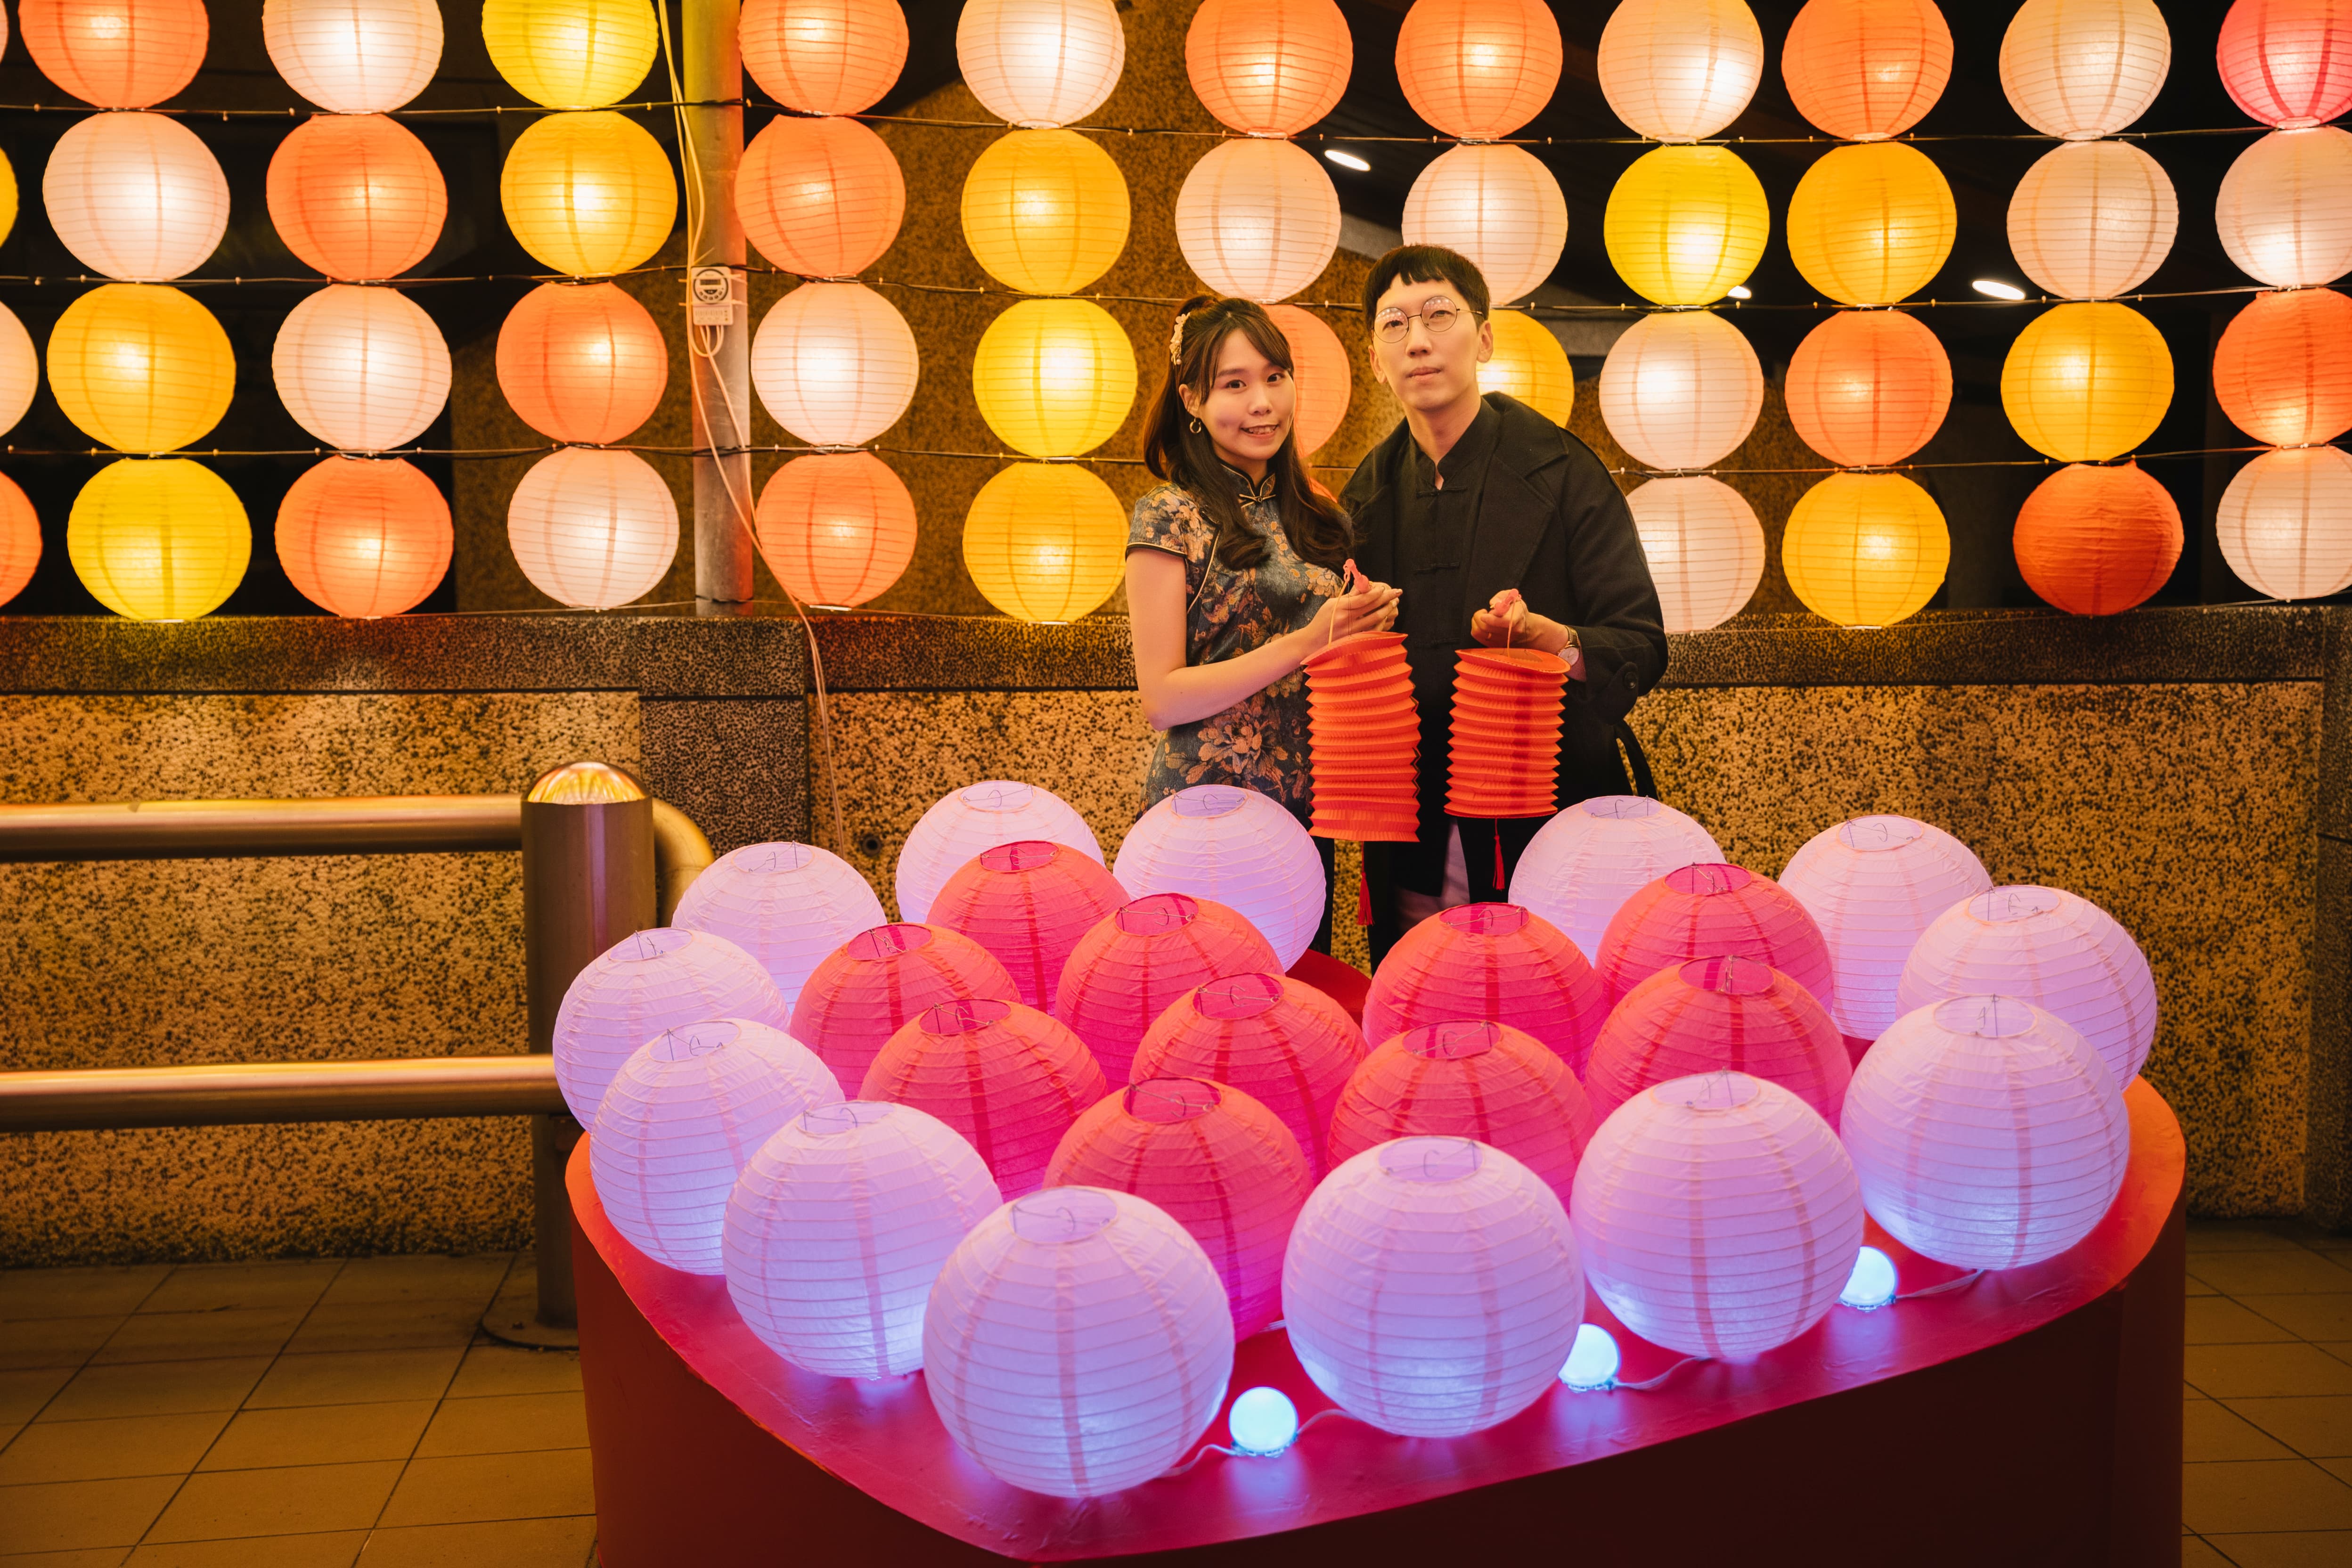 金山岩設置粉色系燈籠及愛心裝置營造浪漫氛圍。